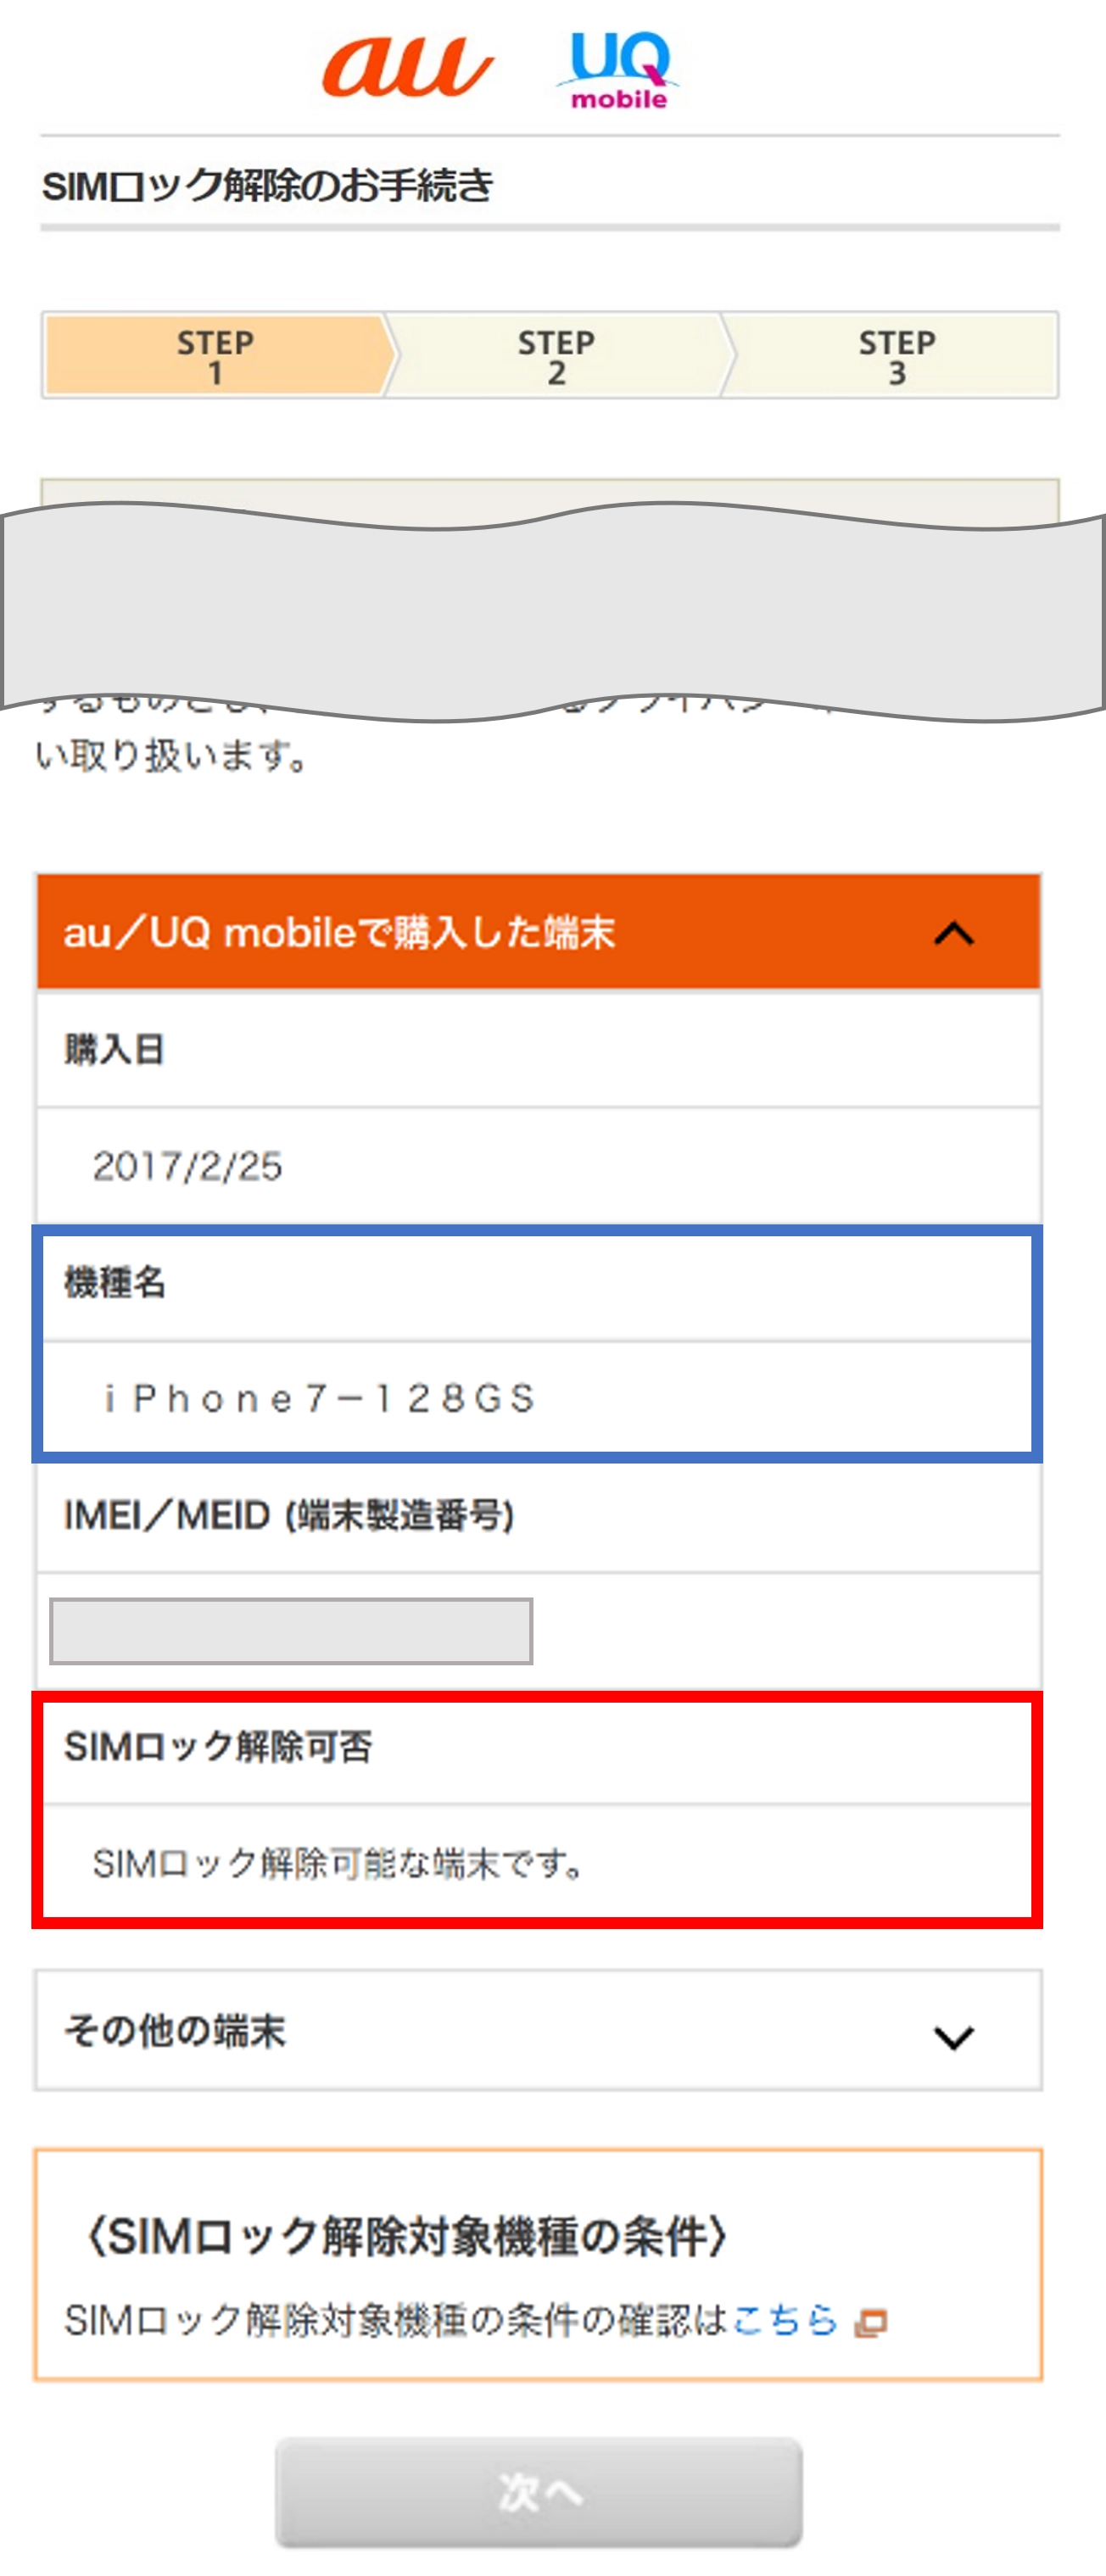 simフリー ipad pro 9.7 32gb au simロック解除済みPC/タブレット